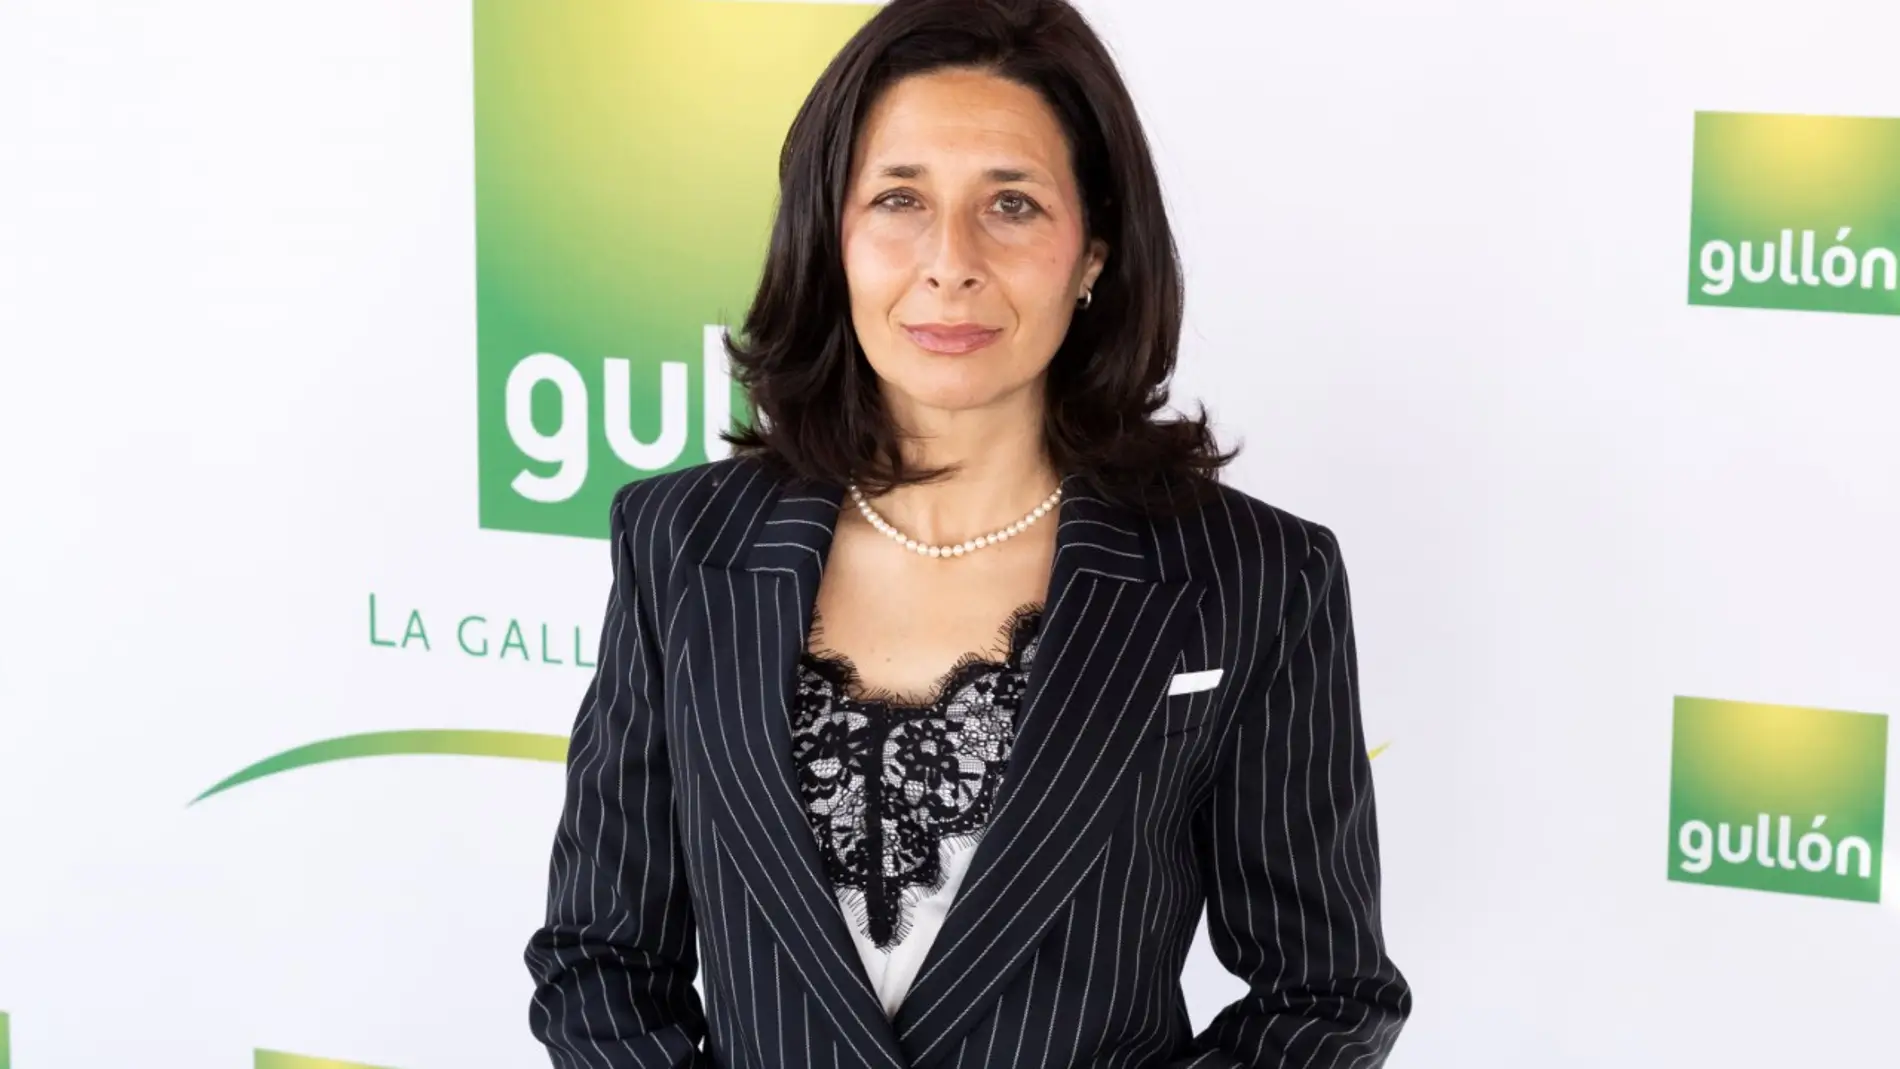 Lourdes Gullón, presidenta de Galletas Gullón, candidata al TOP 100 Mujeres Líderes de Mujeres&Cía